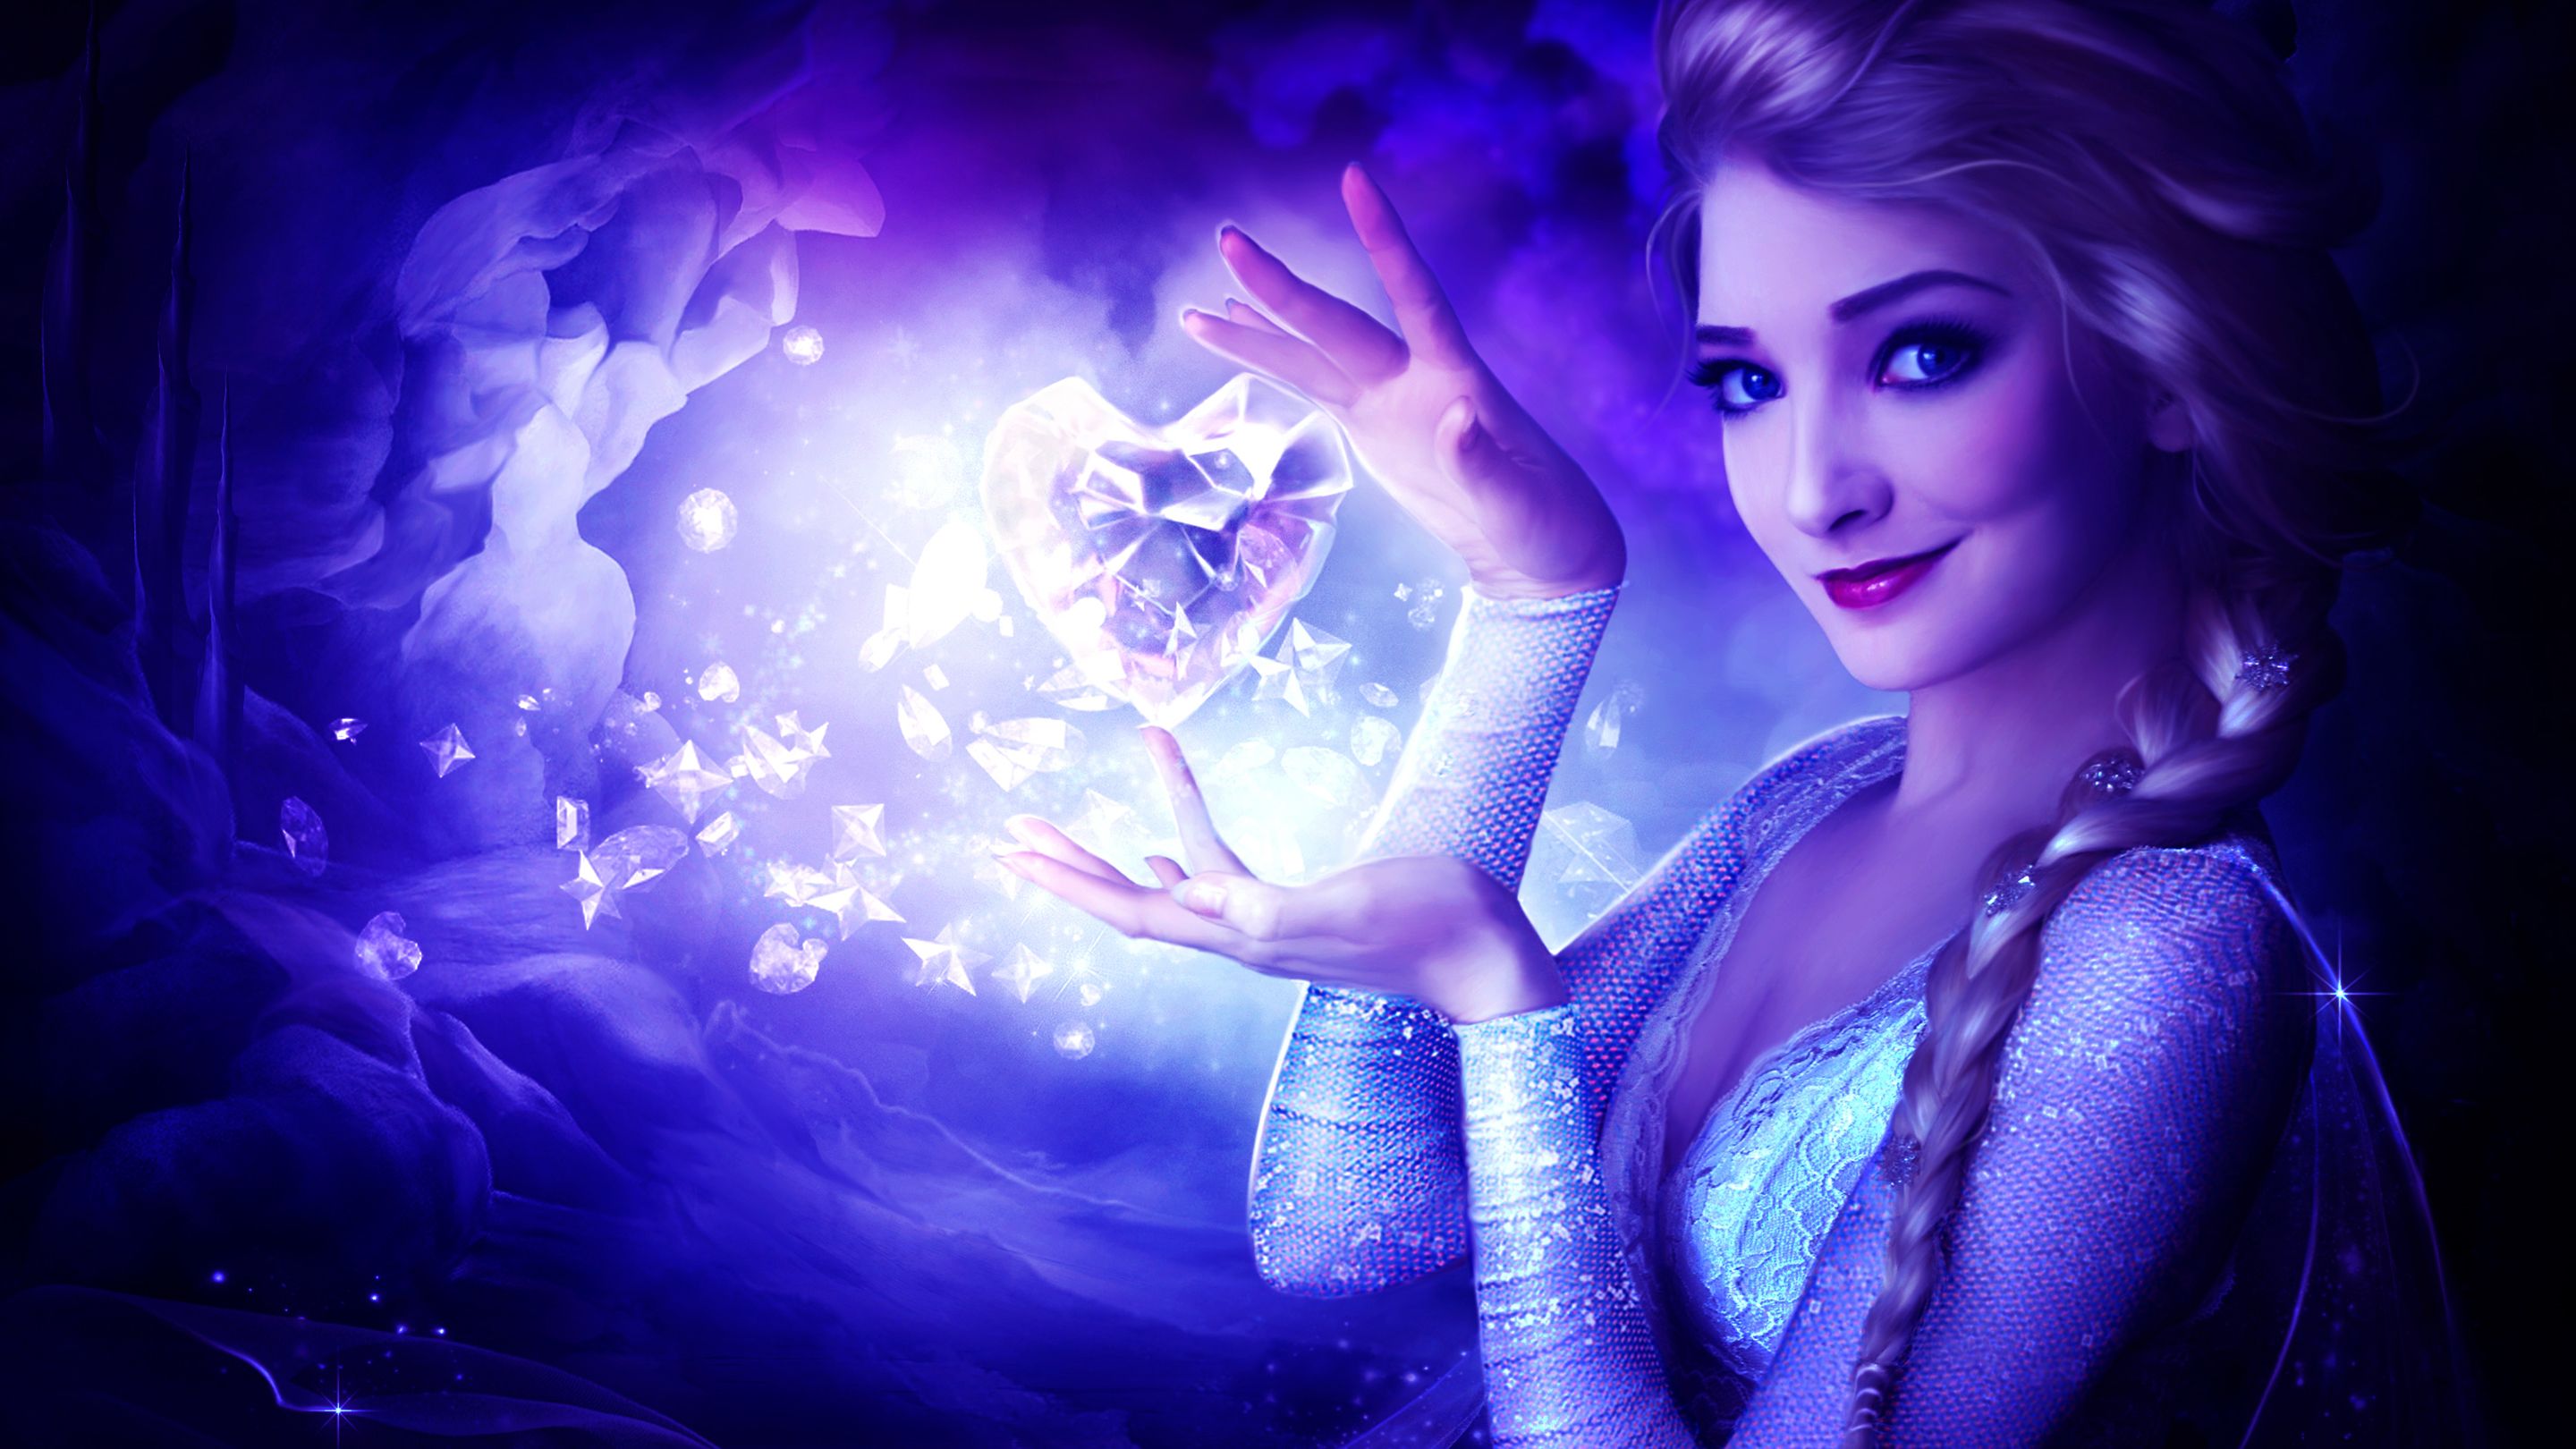 Queen Elsa Frozen Wallpapers 4k Hd Queen Elsa Frozen Backgrounds On Wallpaperbat 